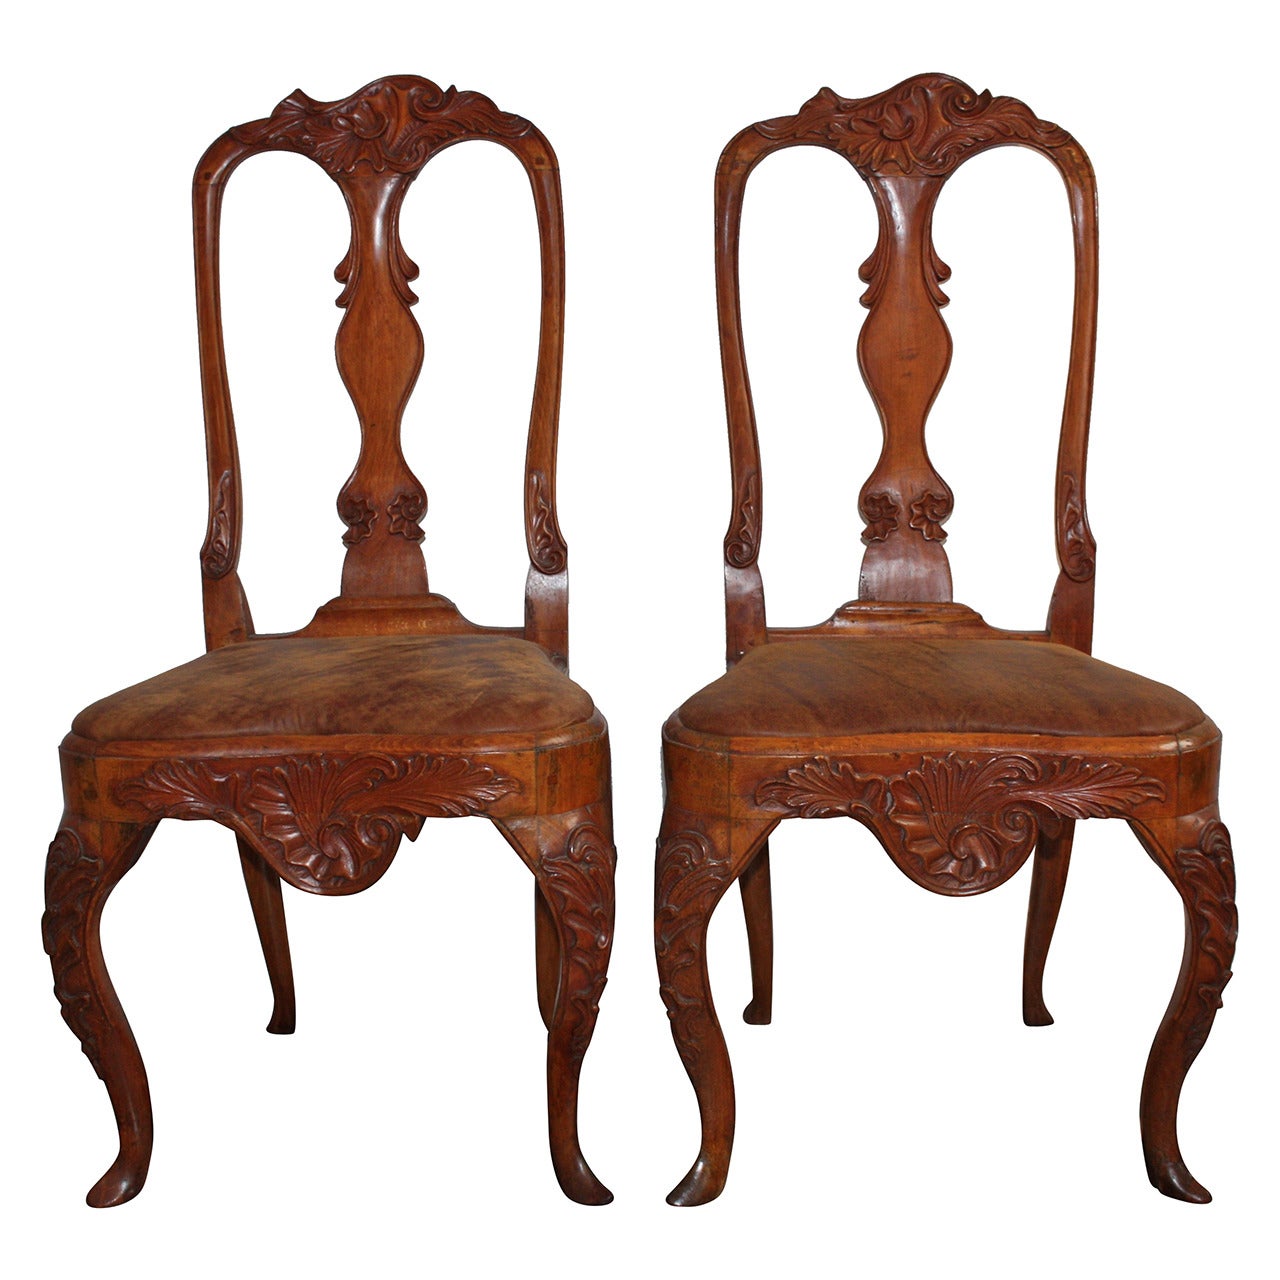 Paire de chaises danoises rococo du 18ème siècle